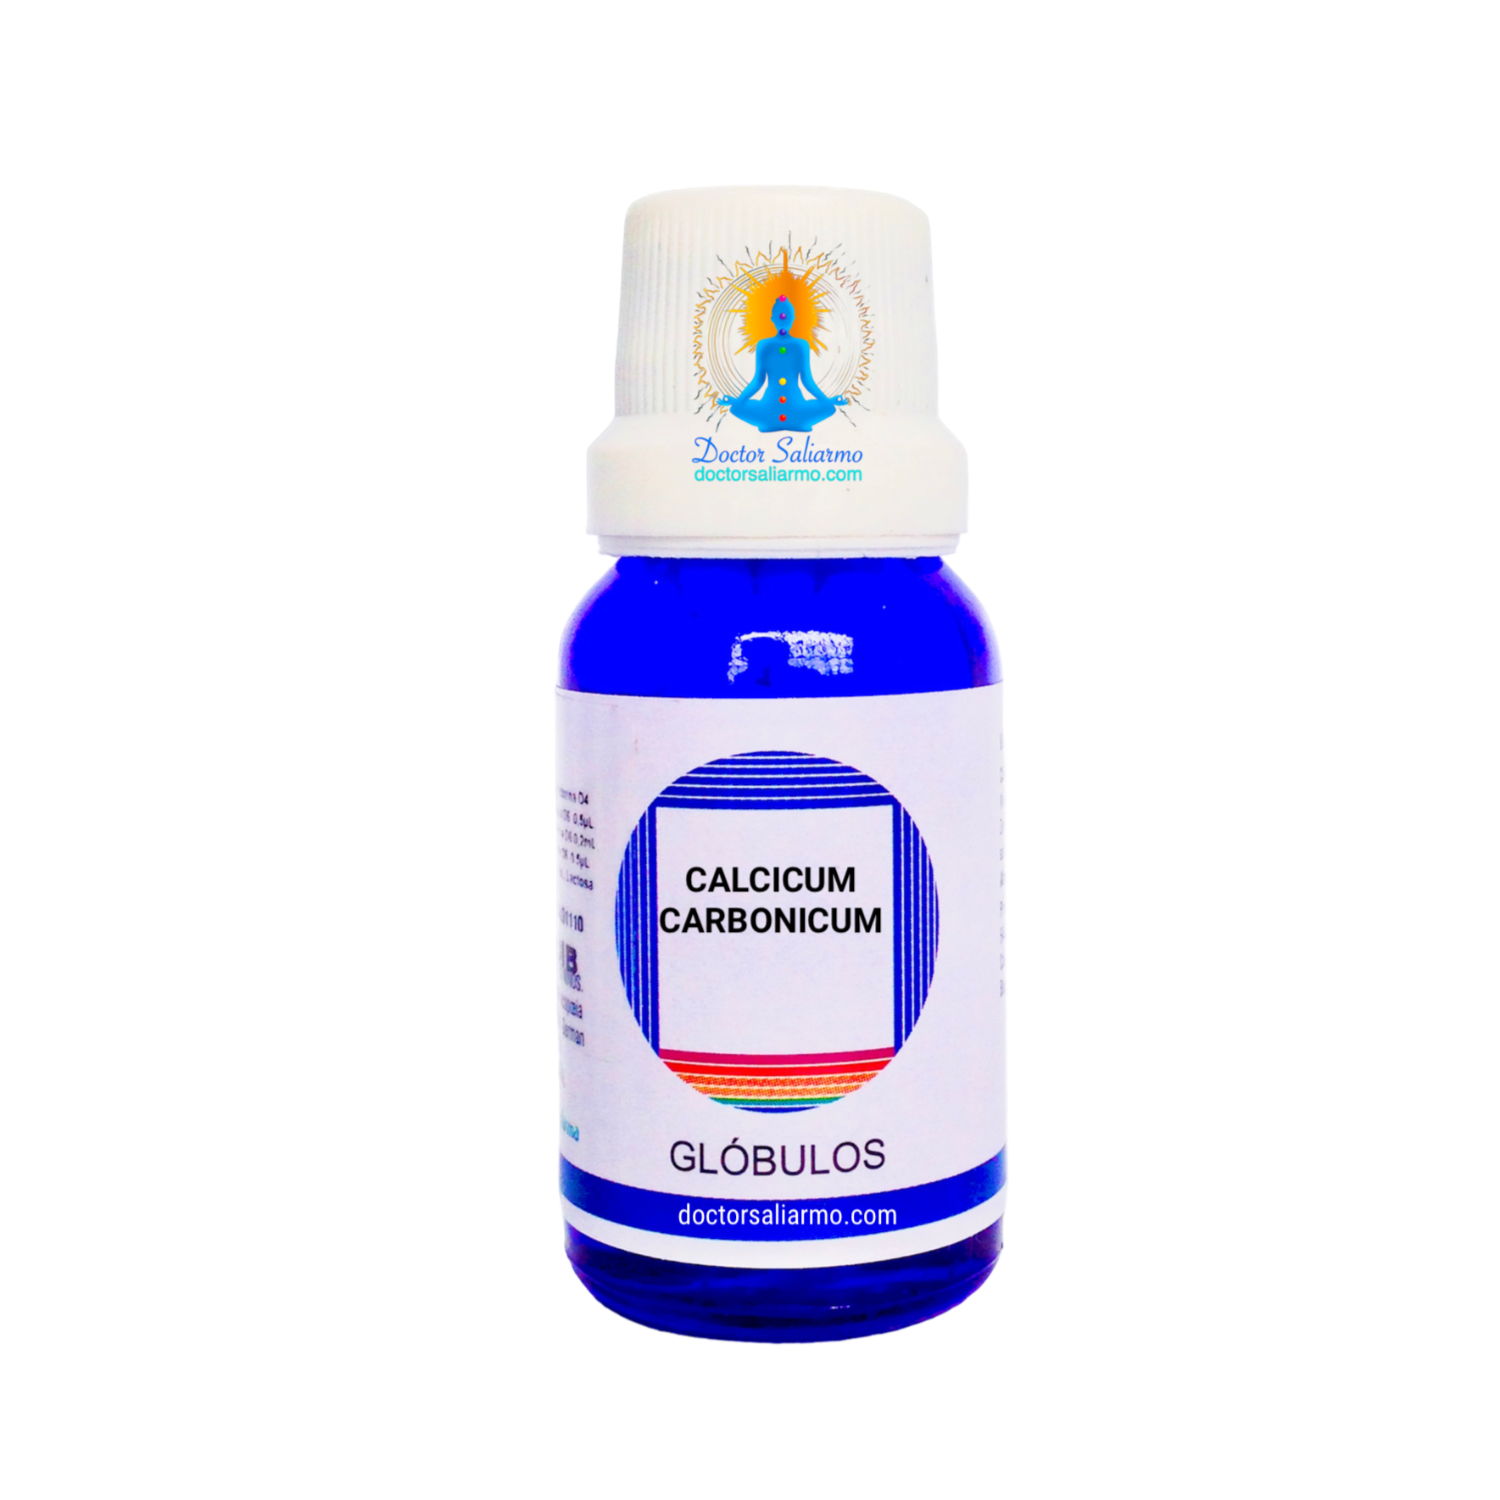 Calcicum Carbonicum usado en rinofaringitis, anginas, otitis, bronquitis.